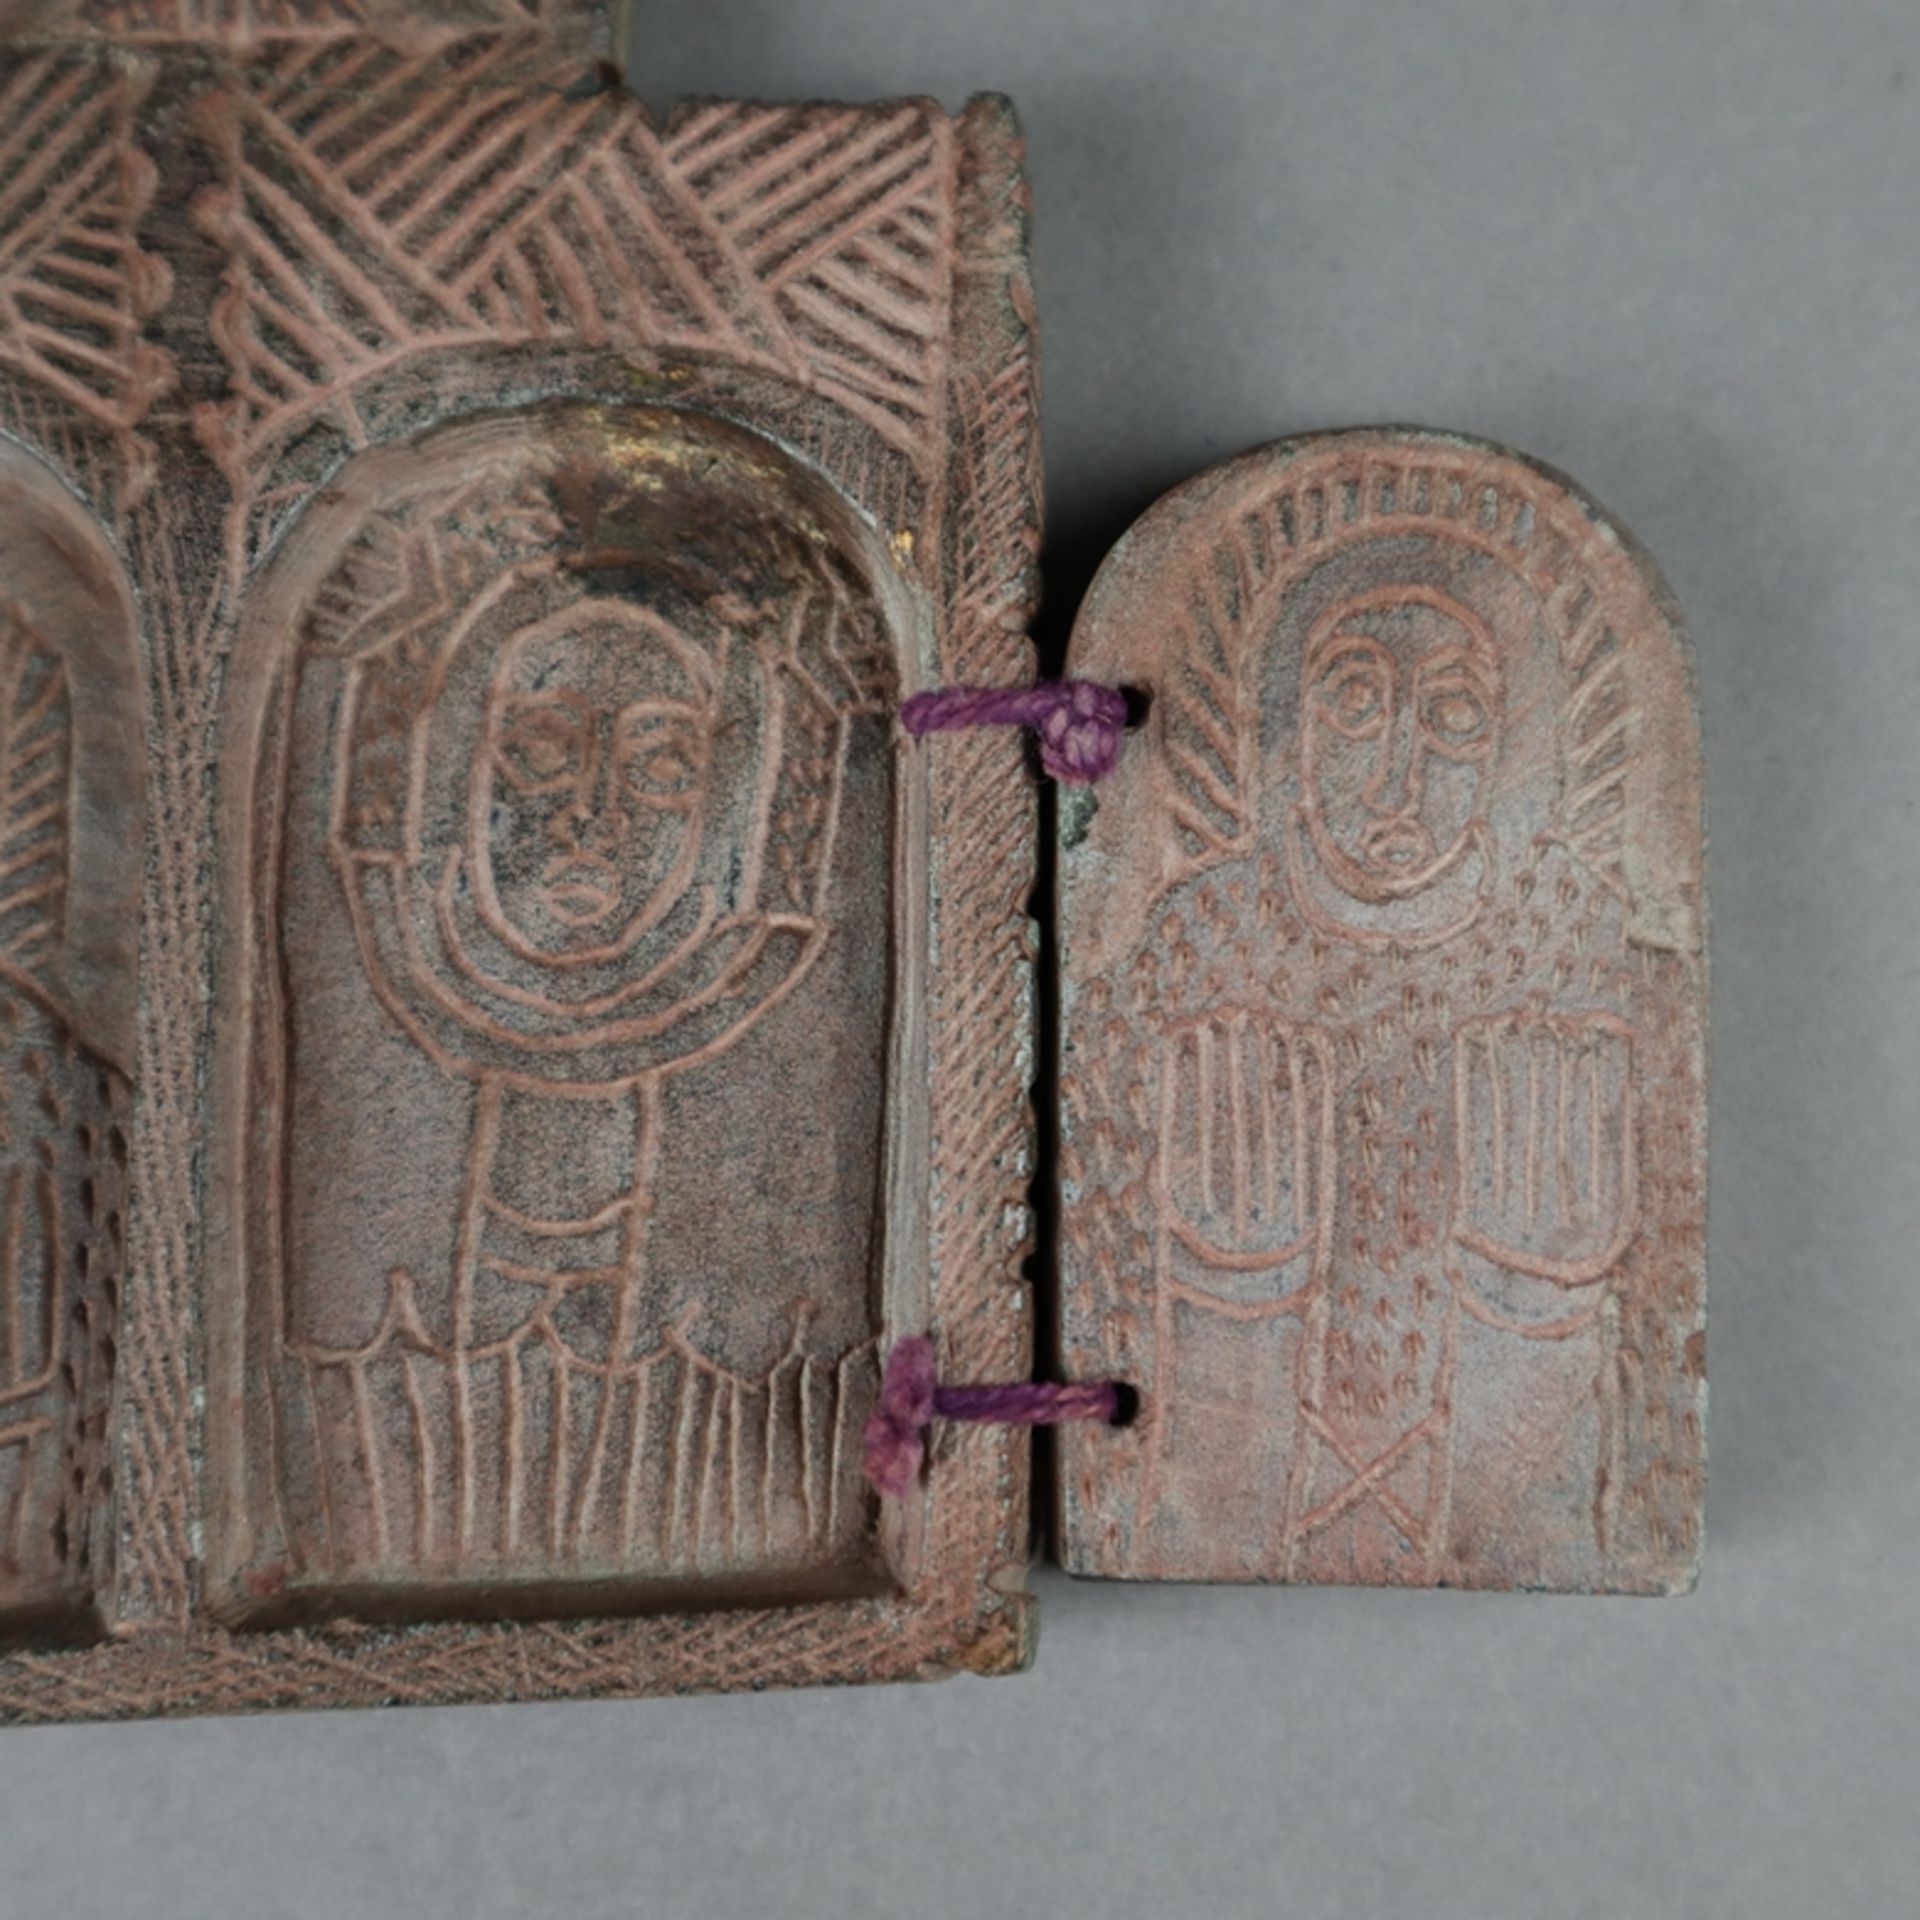 Koptischer Reisealtar - rötlicher Ton, Sgraffito-Dekor, beidseitig je 2 Flügeltüren, außen - Bild 4 aus 7